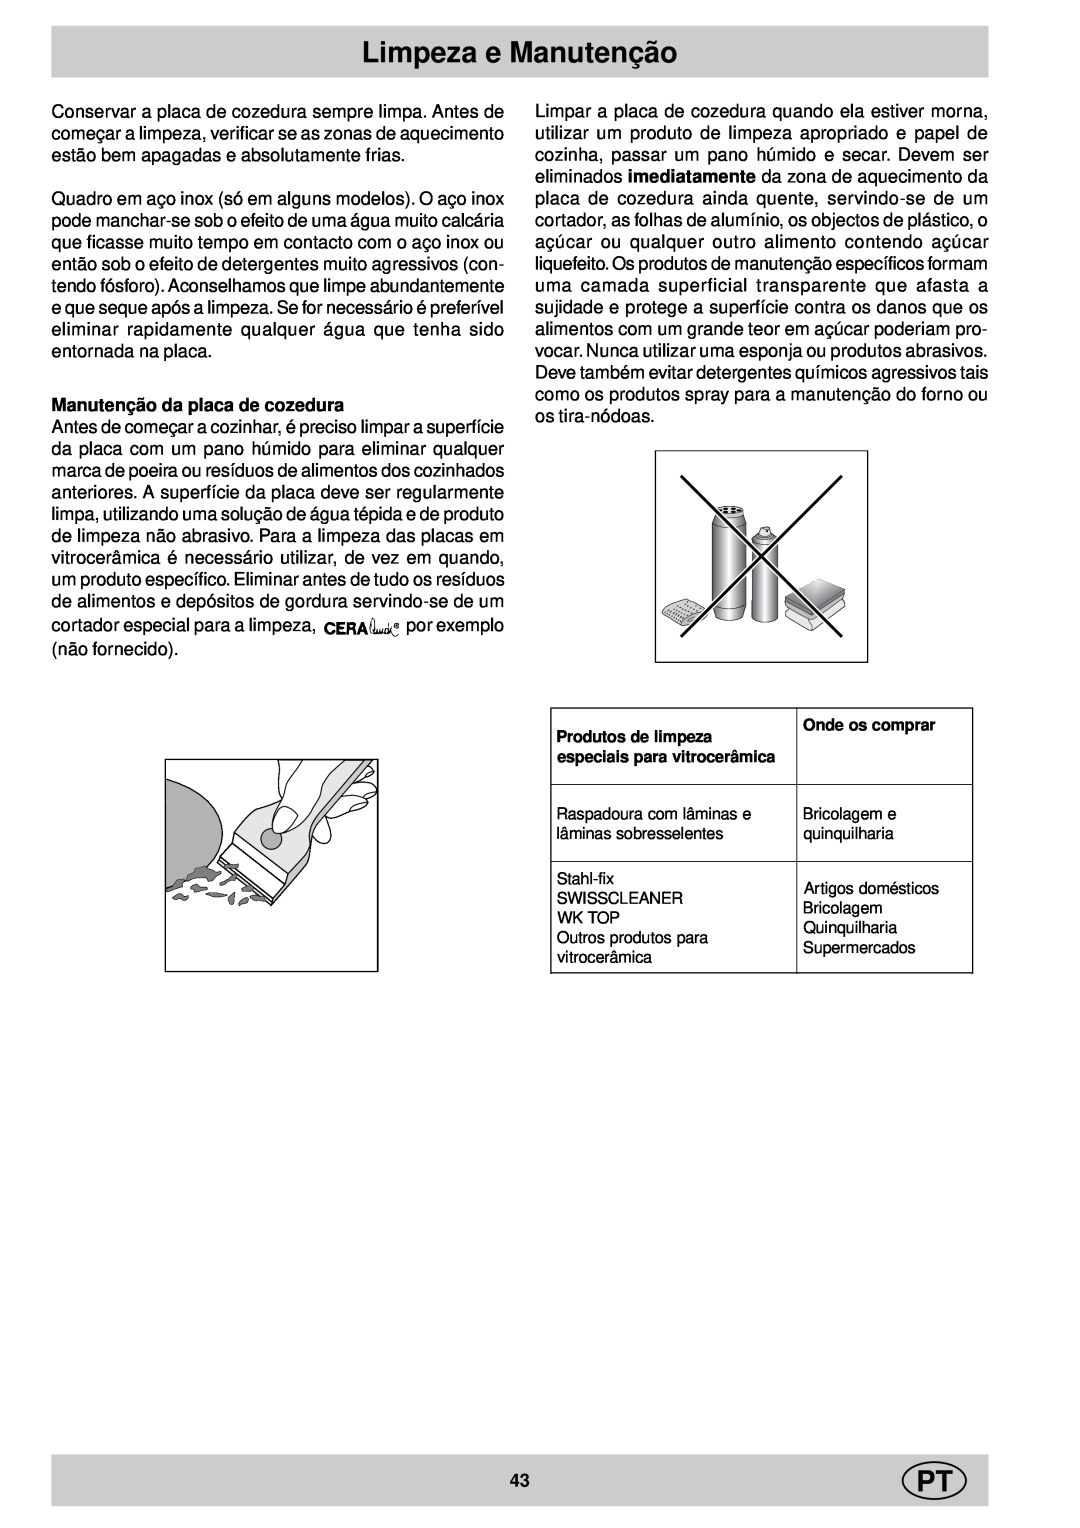 Ariston KT 8104 QO manual Limpeza e Manutenção, Manutenção da placa de cozedura 